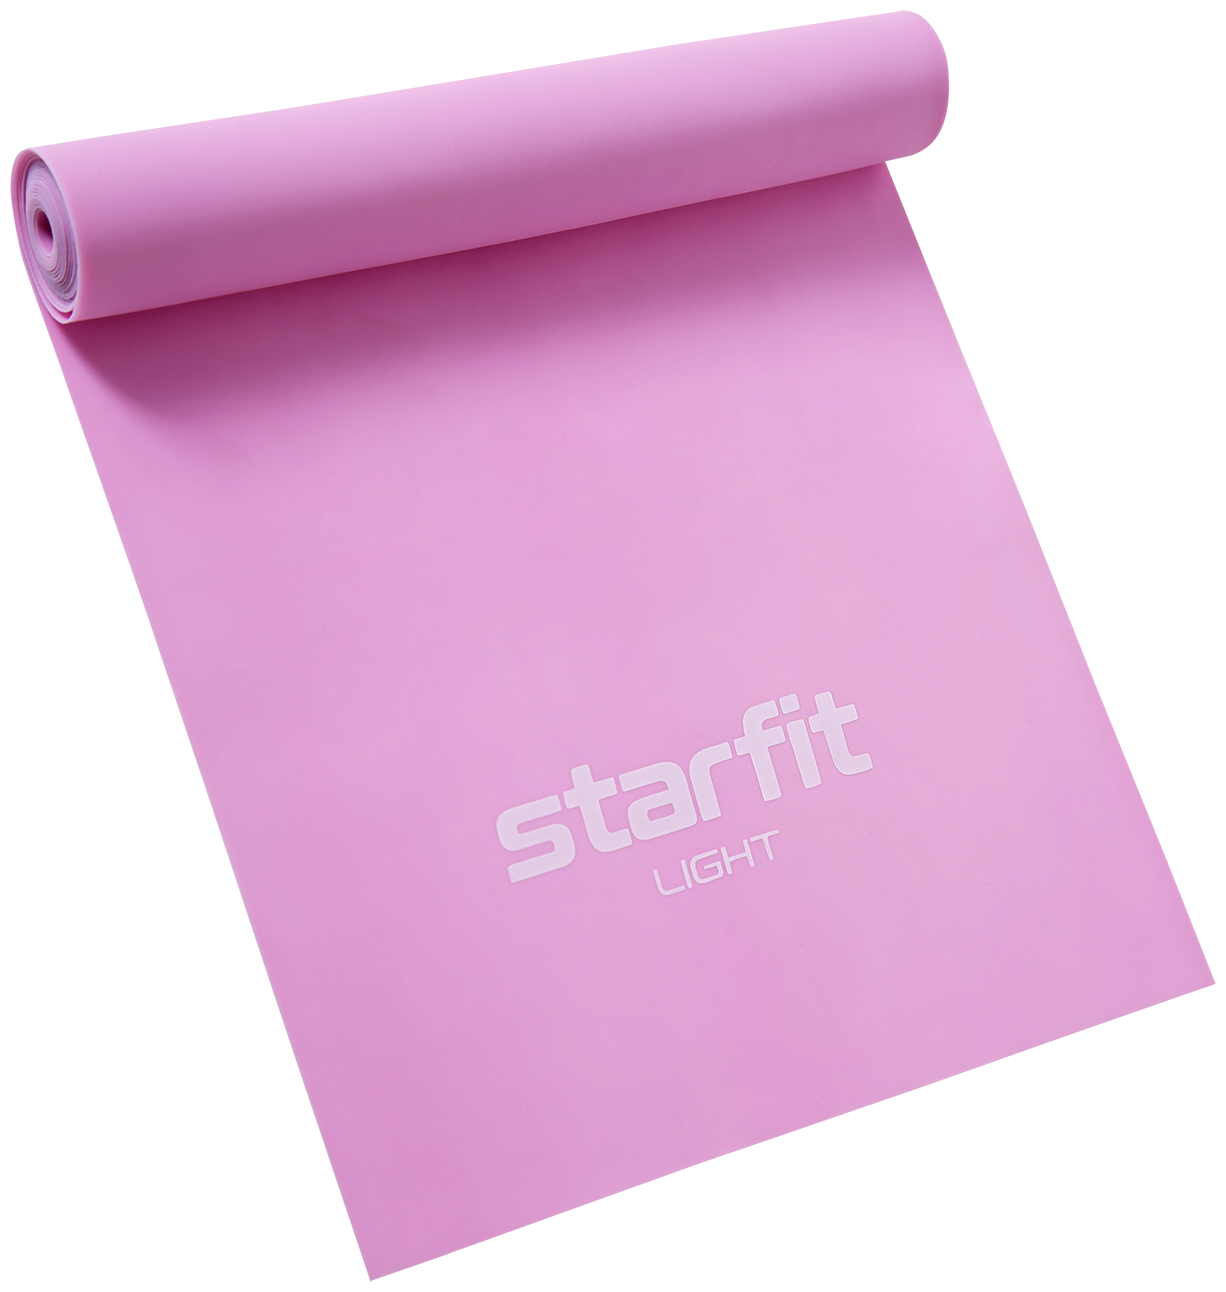 Лента для пилатеса Starfit Es-201 1200x150x0,35 мм, розовый пастель